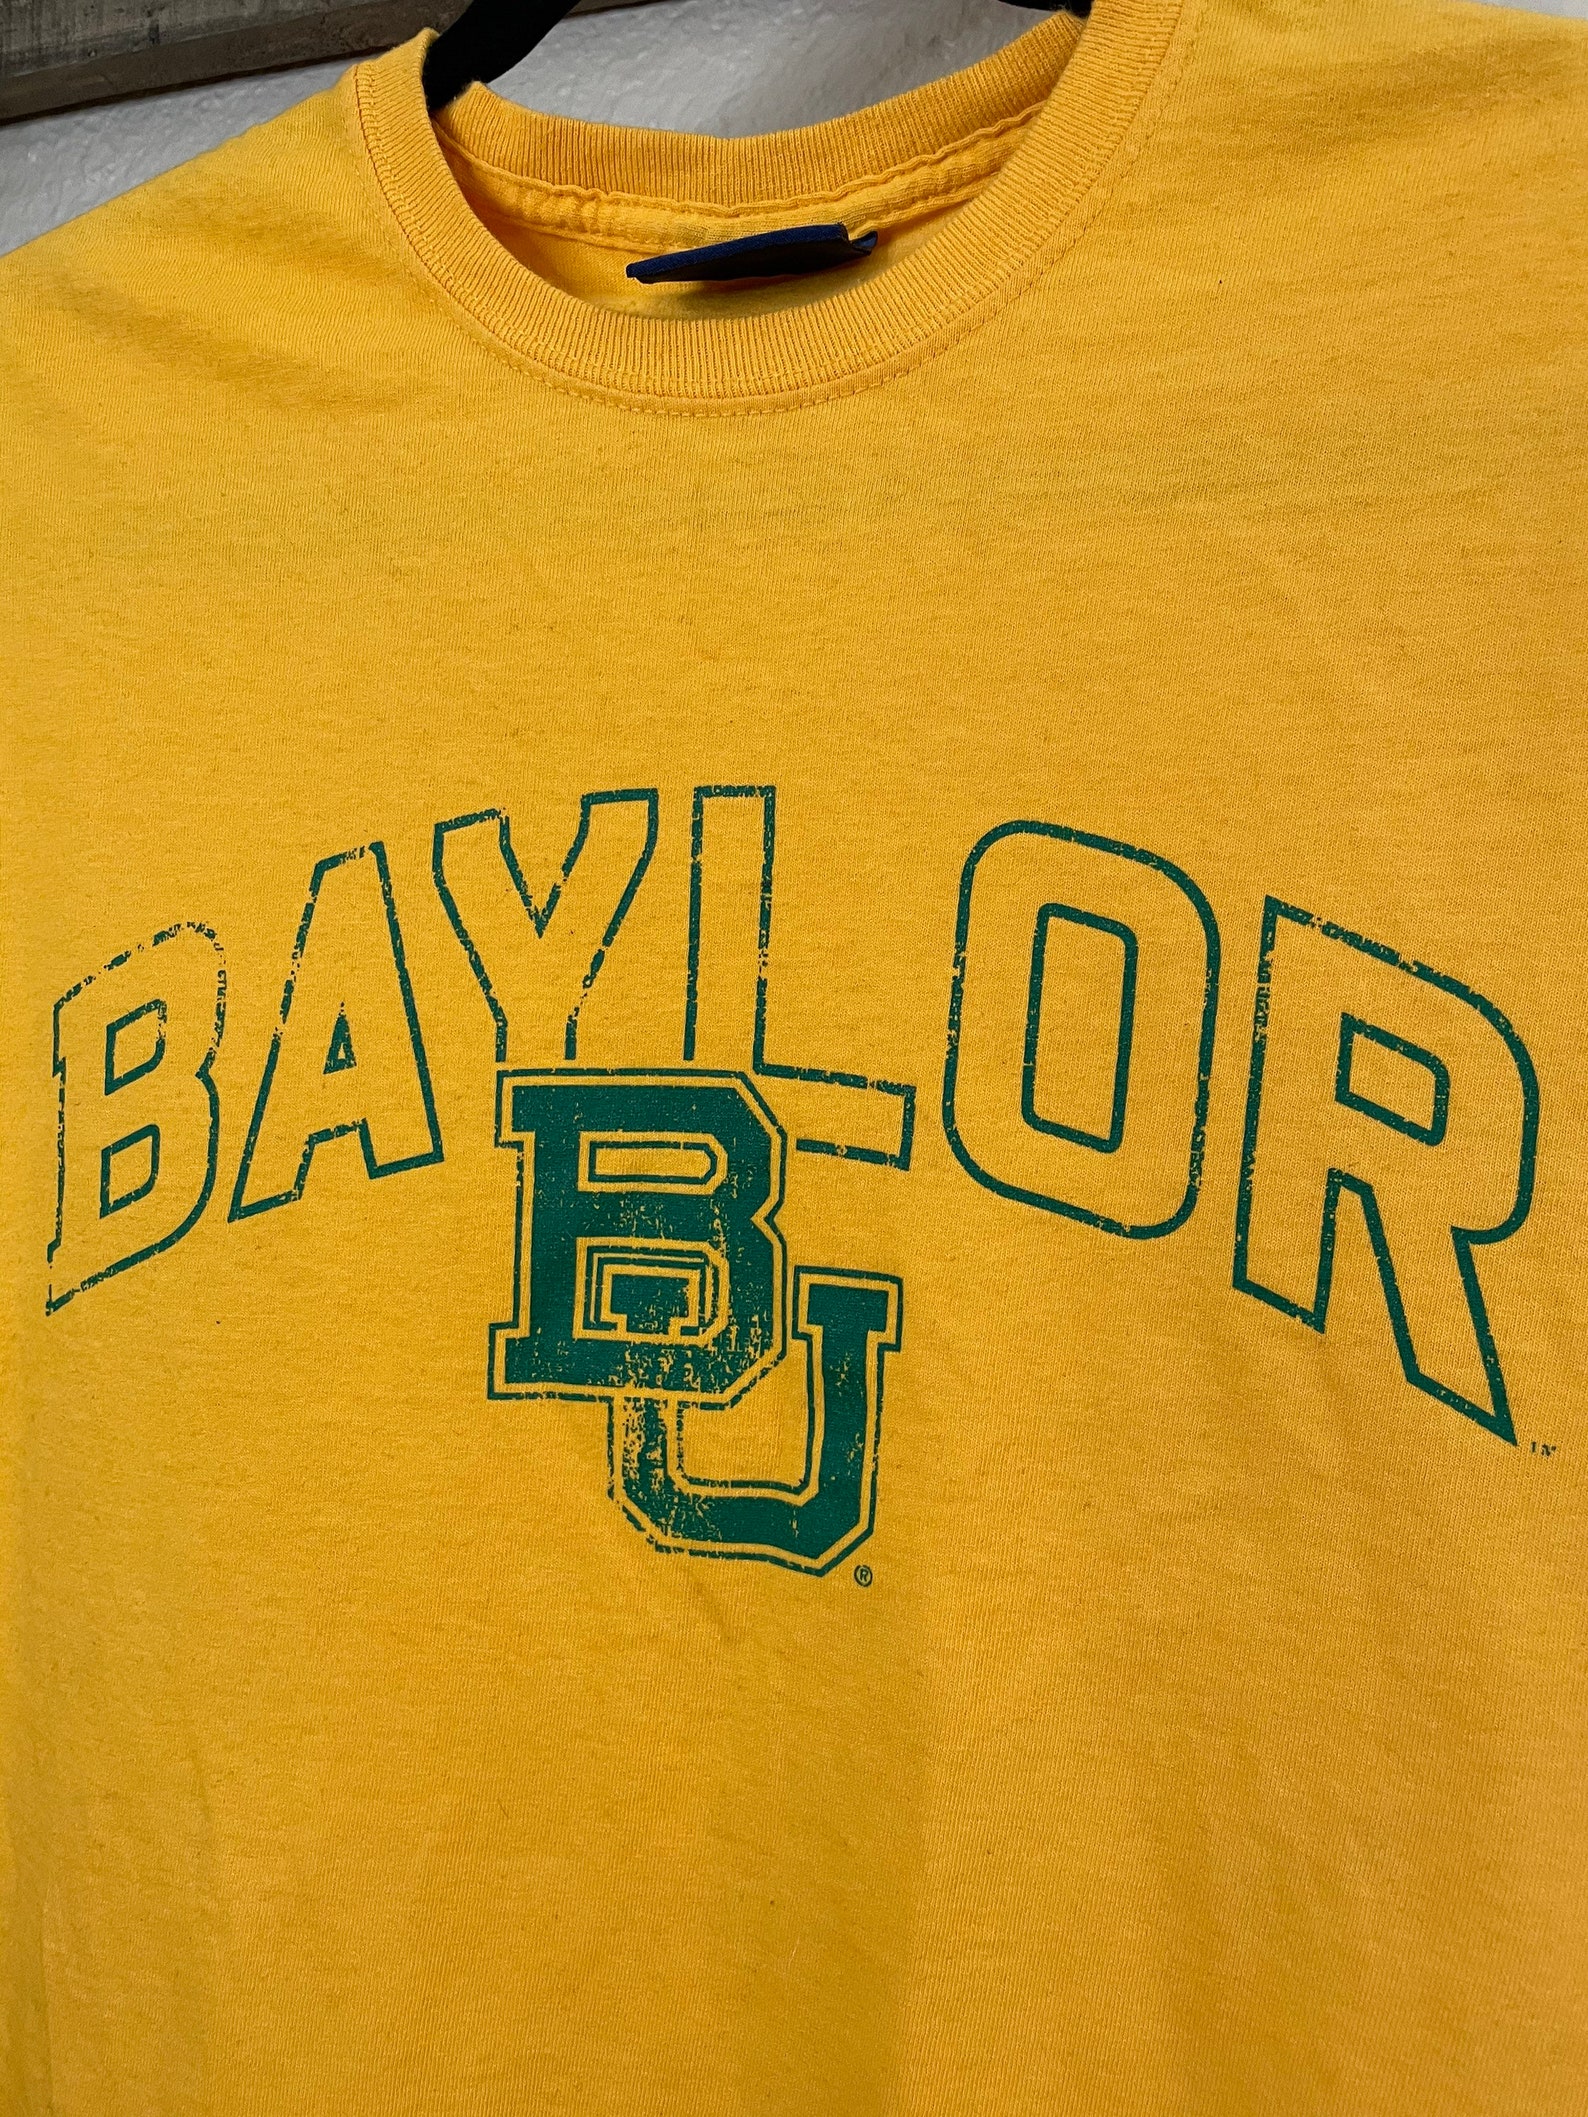 Baylor University Tee Shirt | Etsy